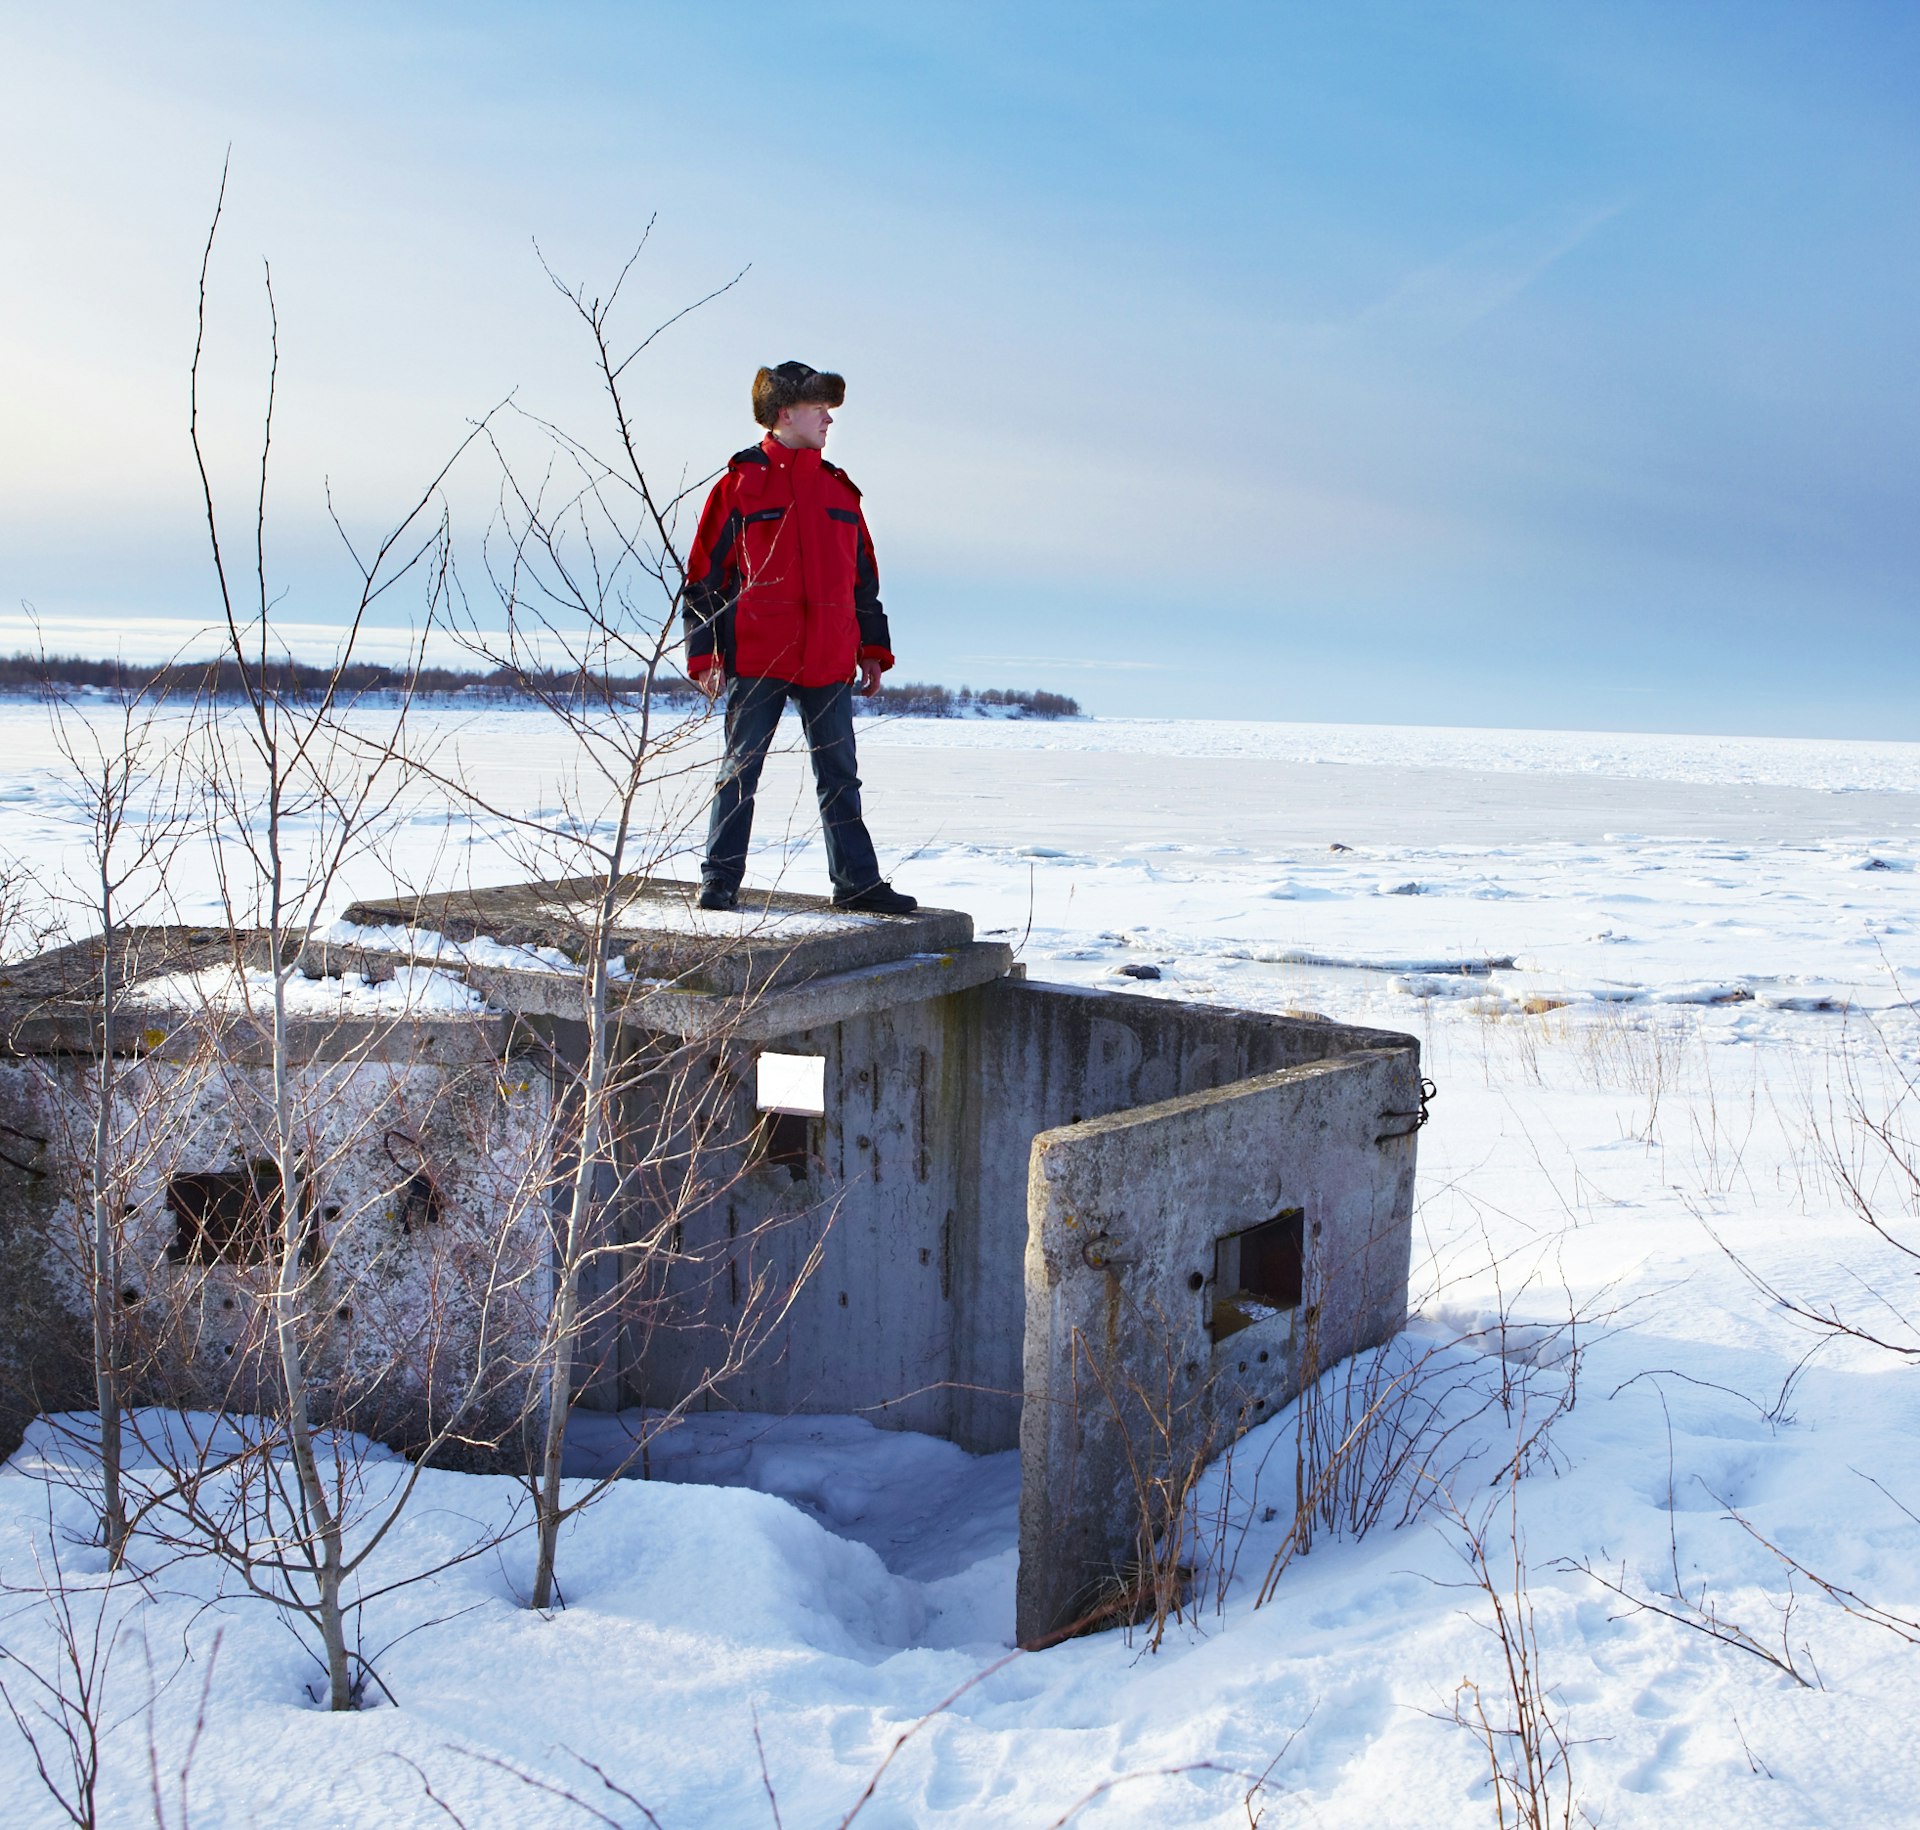 Man standing on Soviet bunker in a snowy landscape